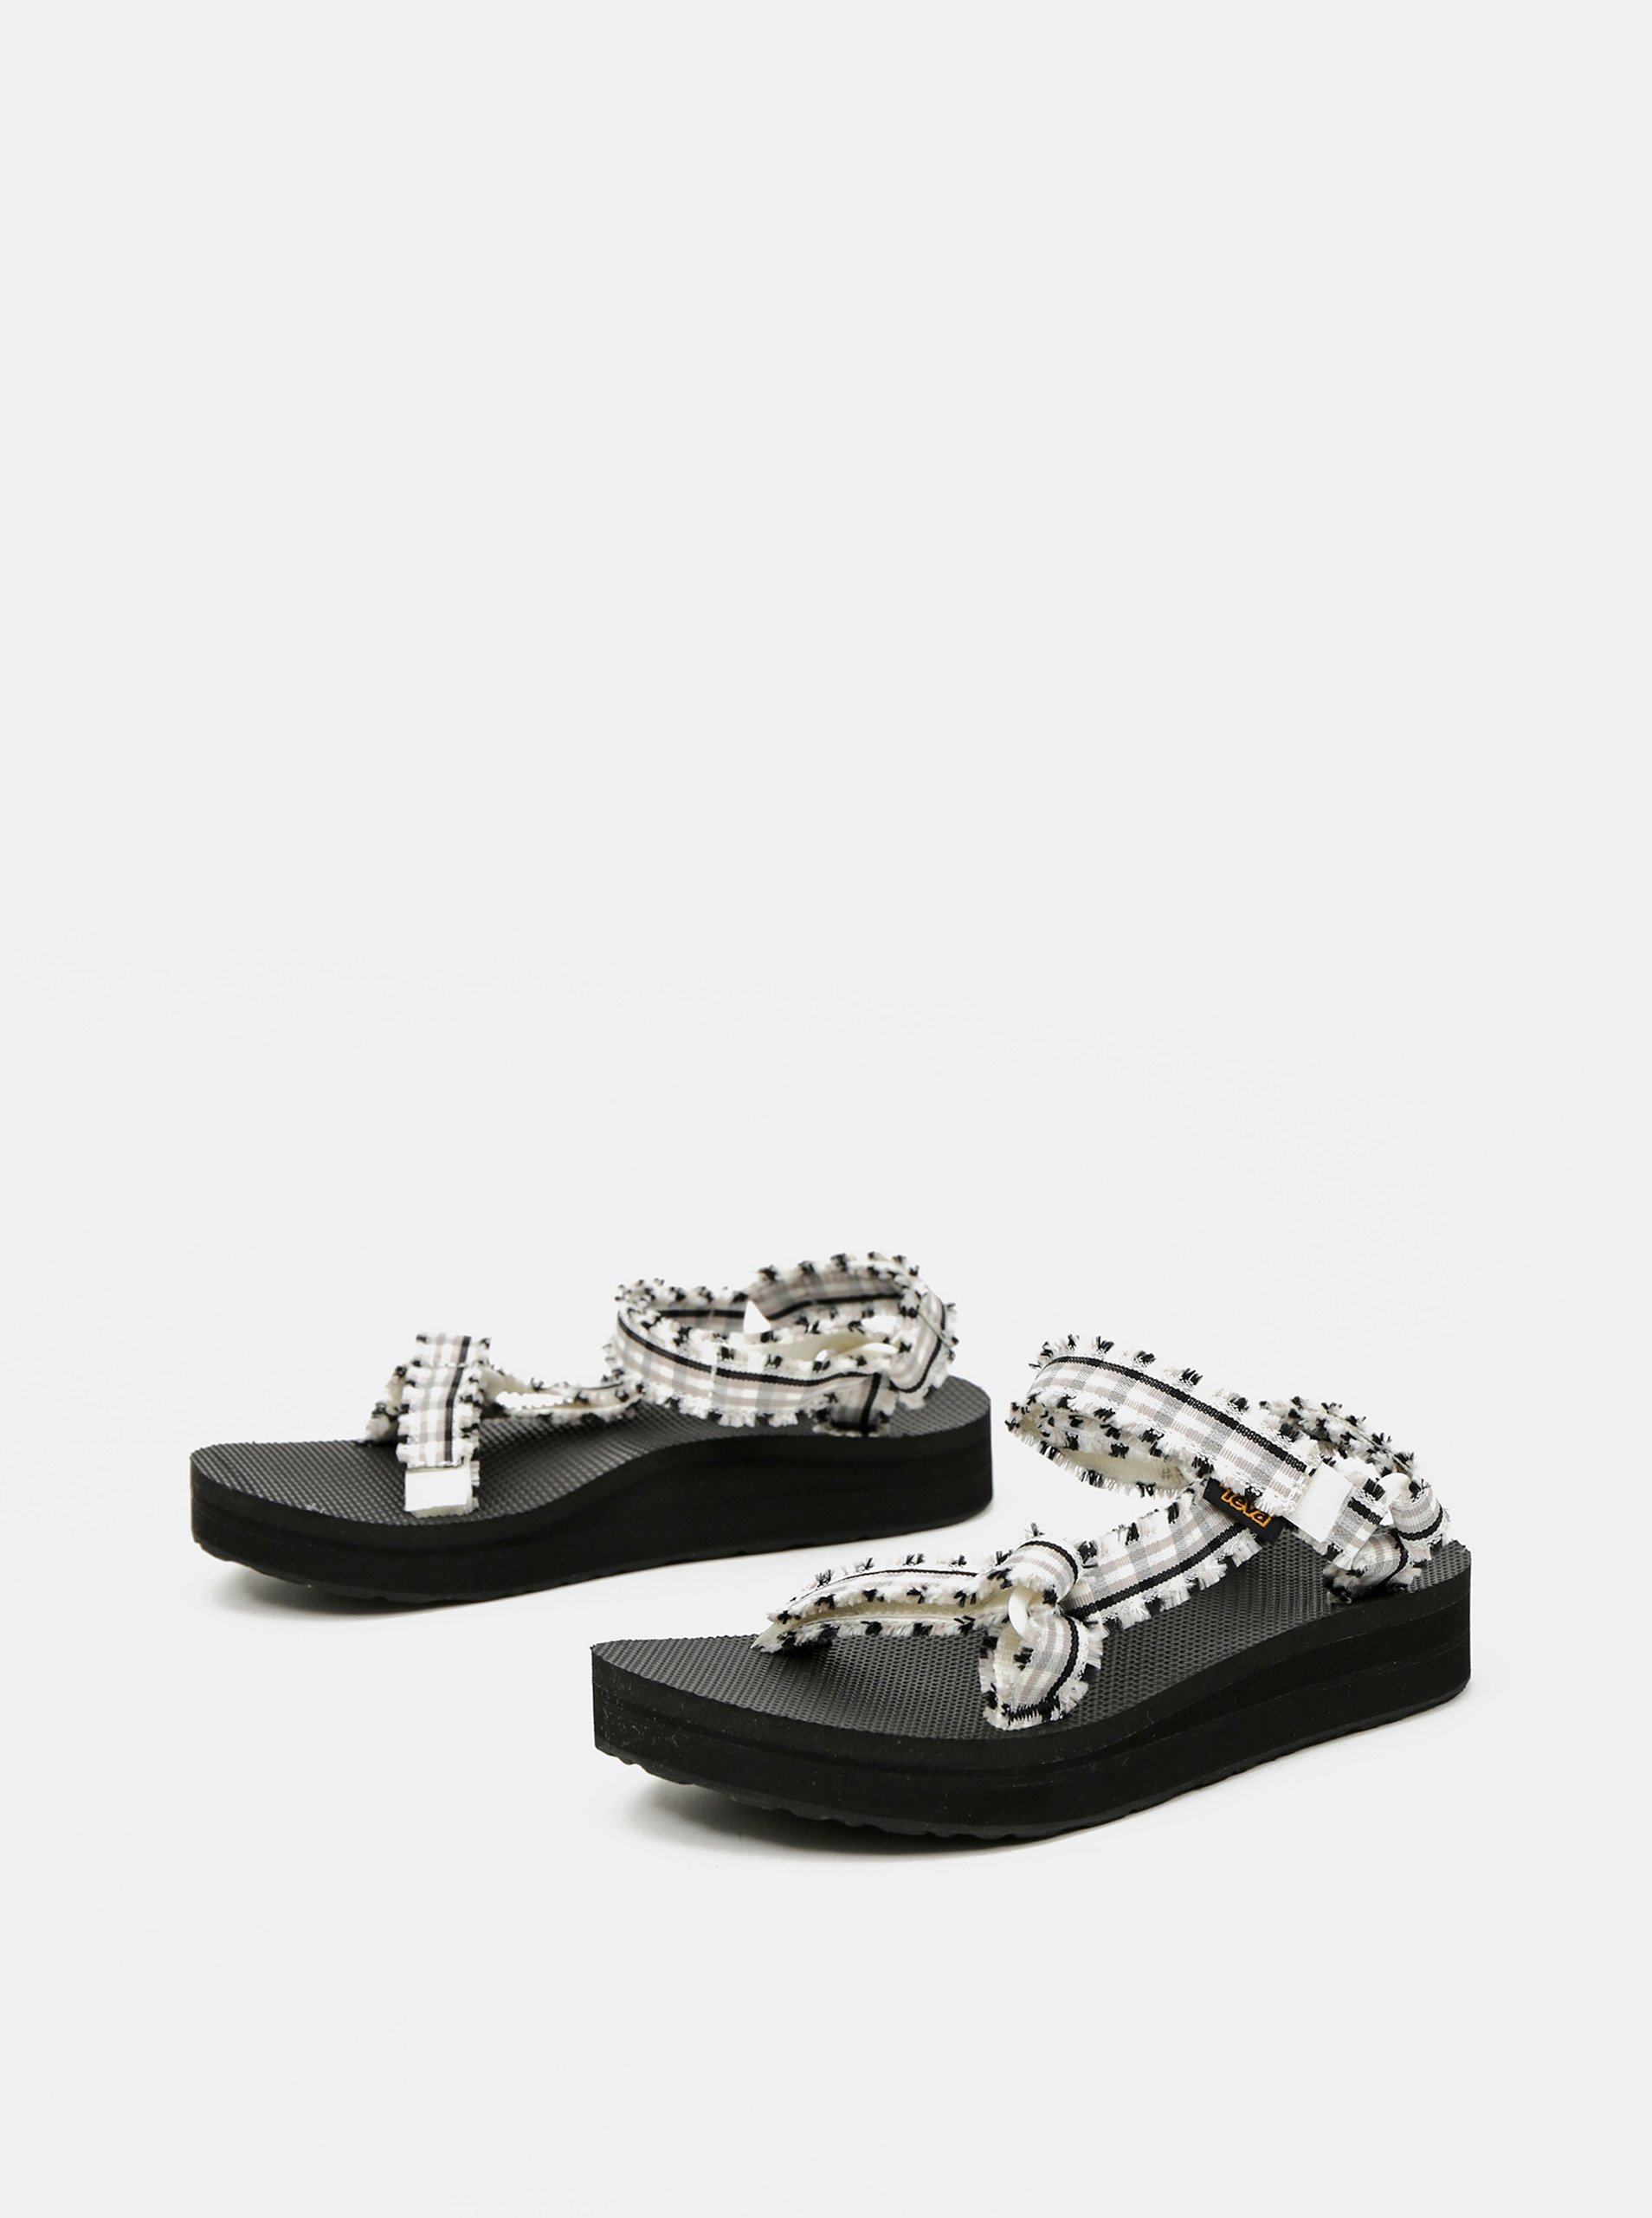 Čierno-biele dámske kockované sandále Teva.